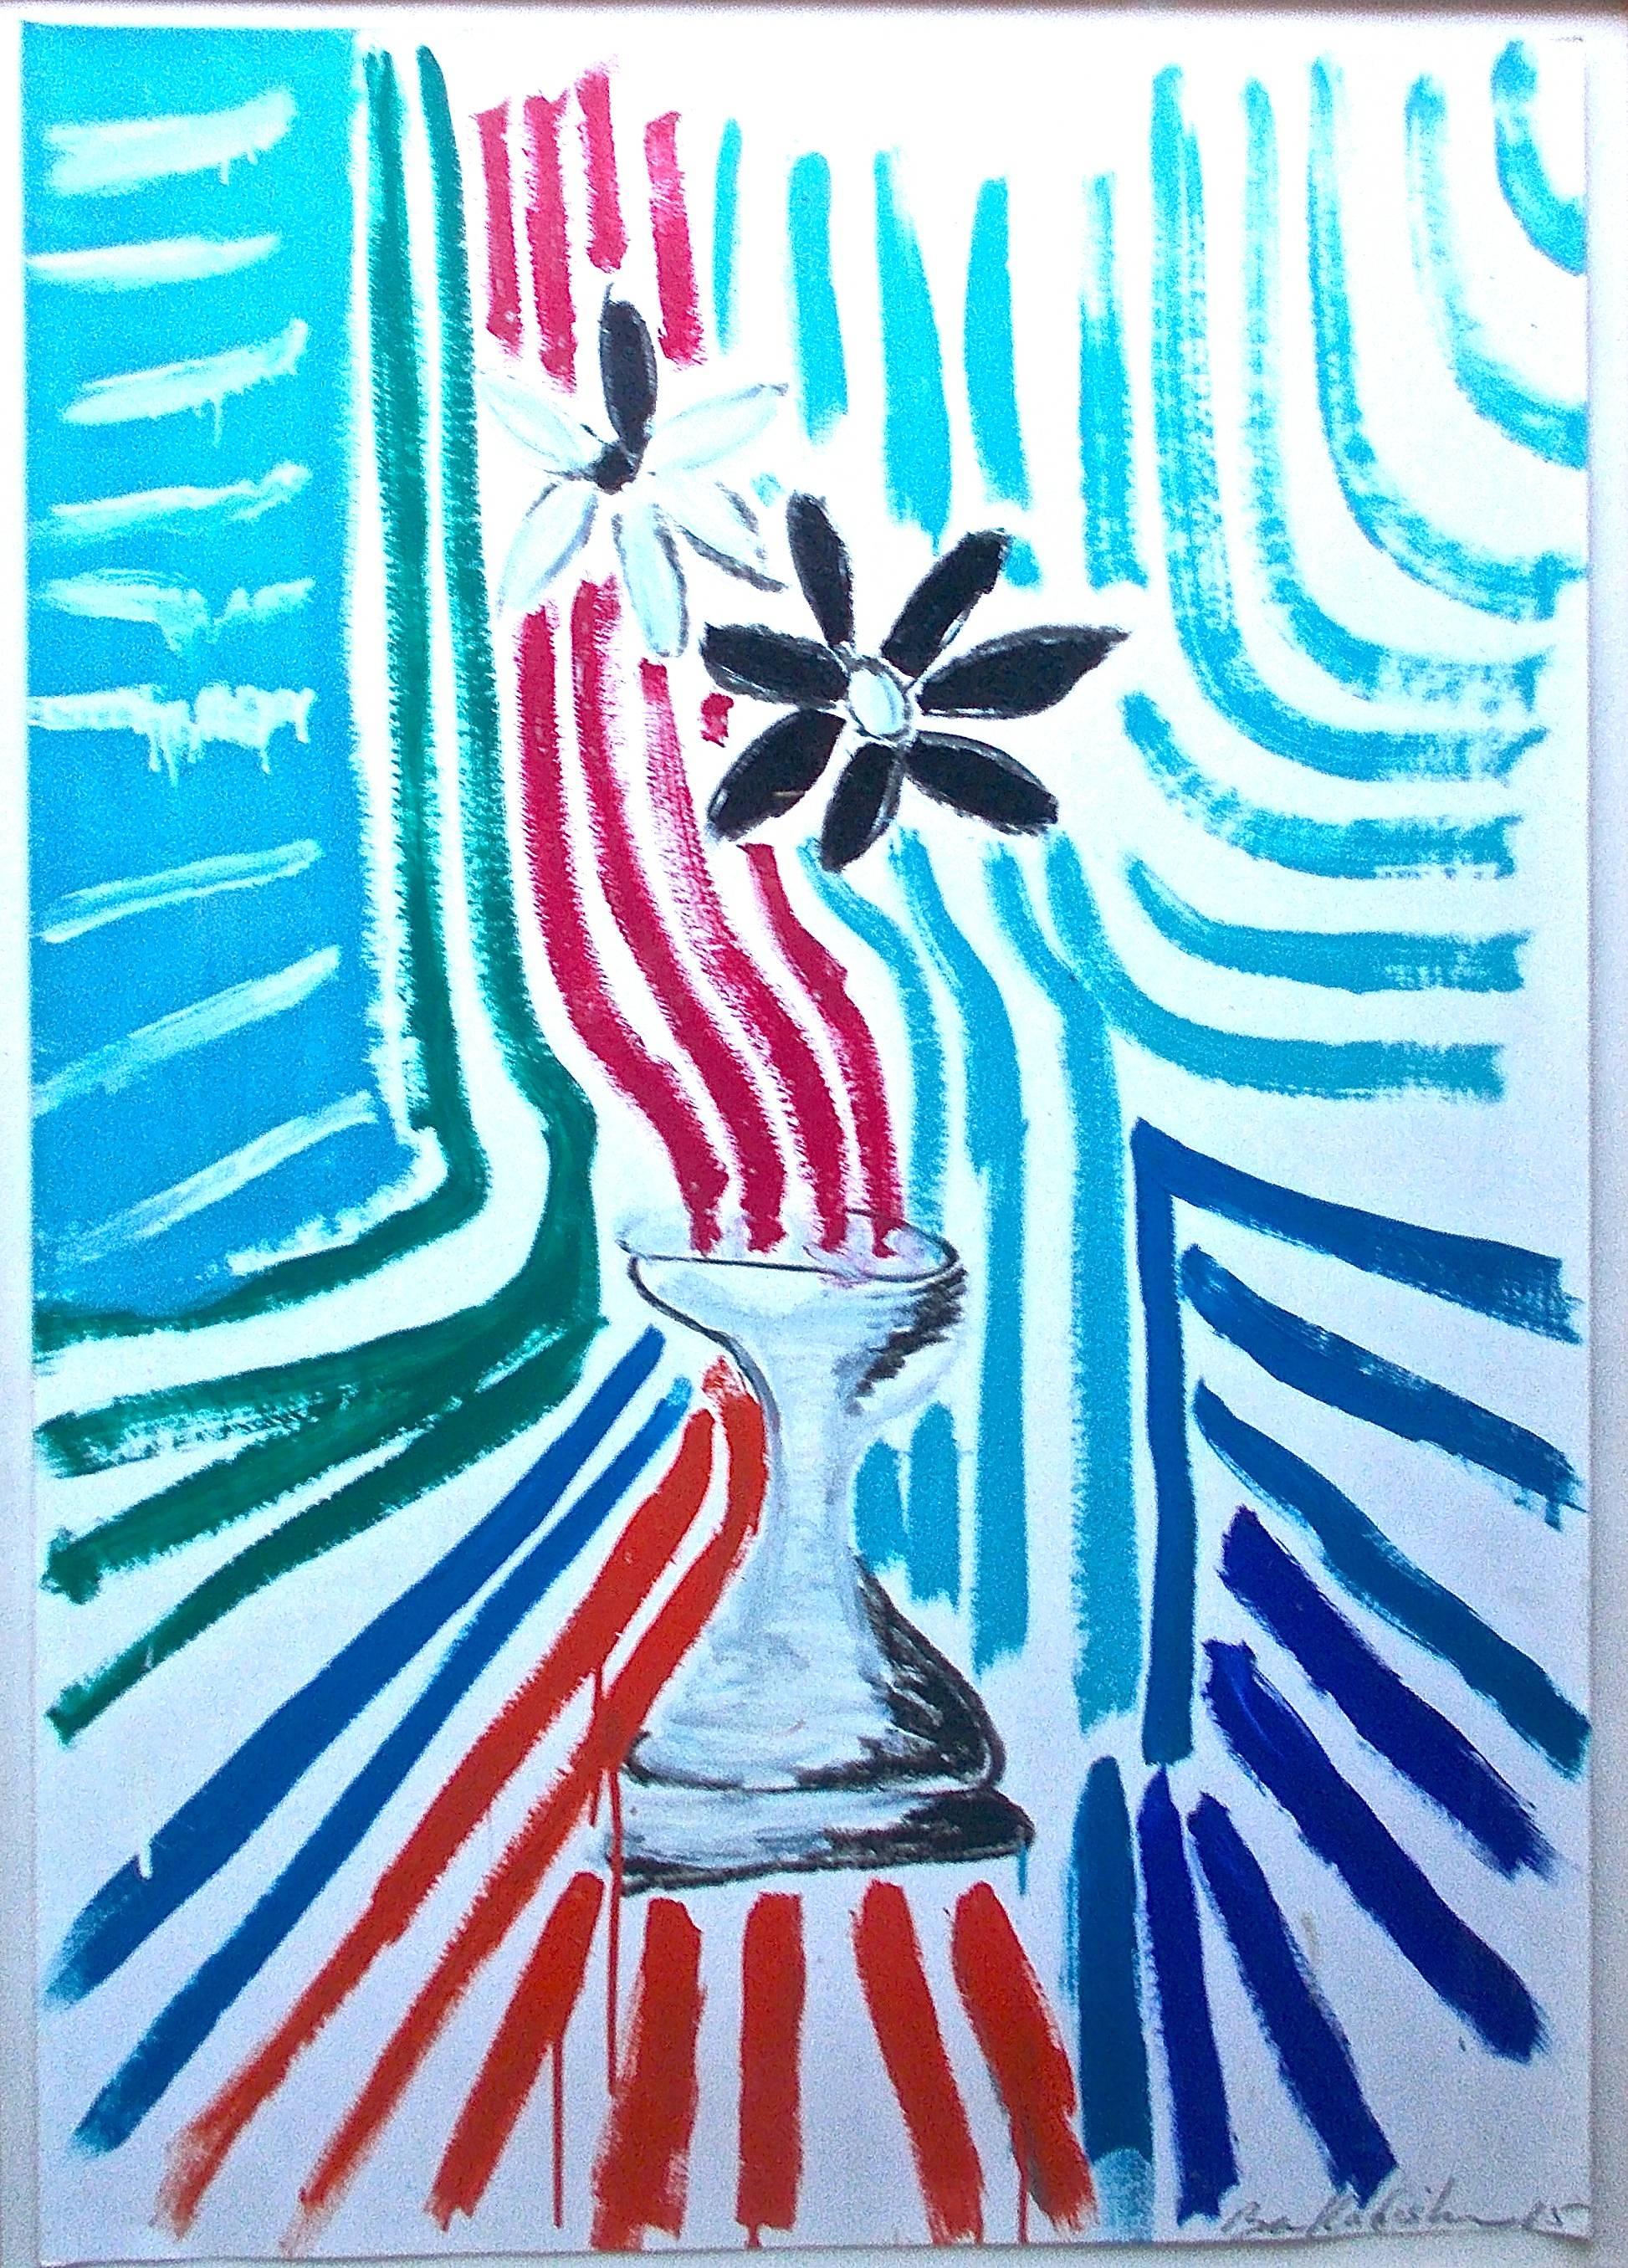 Une grande abstraction colorée de Kadishman (Israël 1932-2016) représentant un vase avec des fleurs, dans un espace dynamique. Menashe Kadishman était un artiste israélien important qui a fait l'objet d'une rétrospective au Musée juif de New York